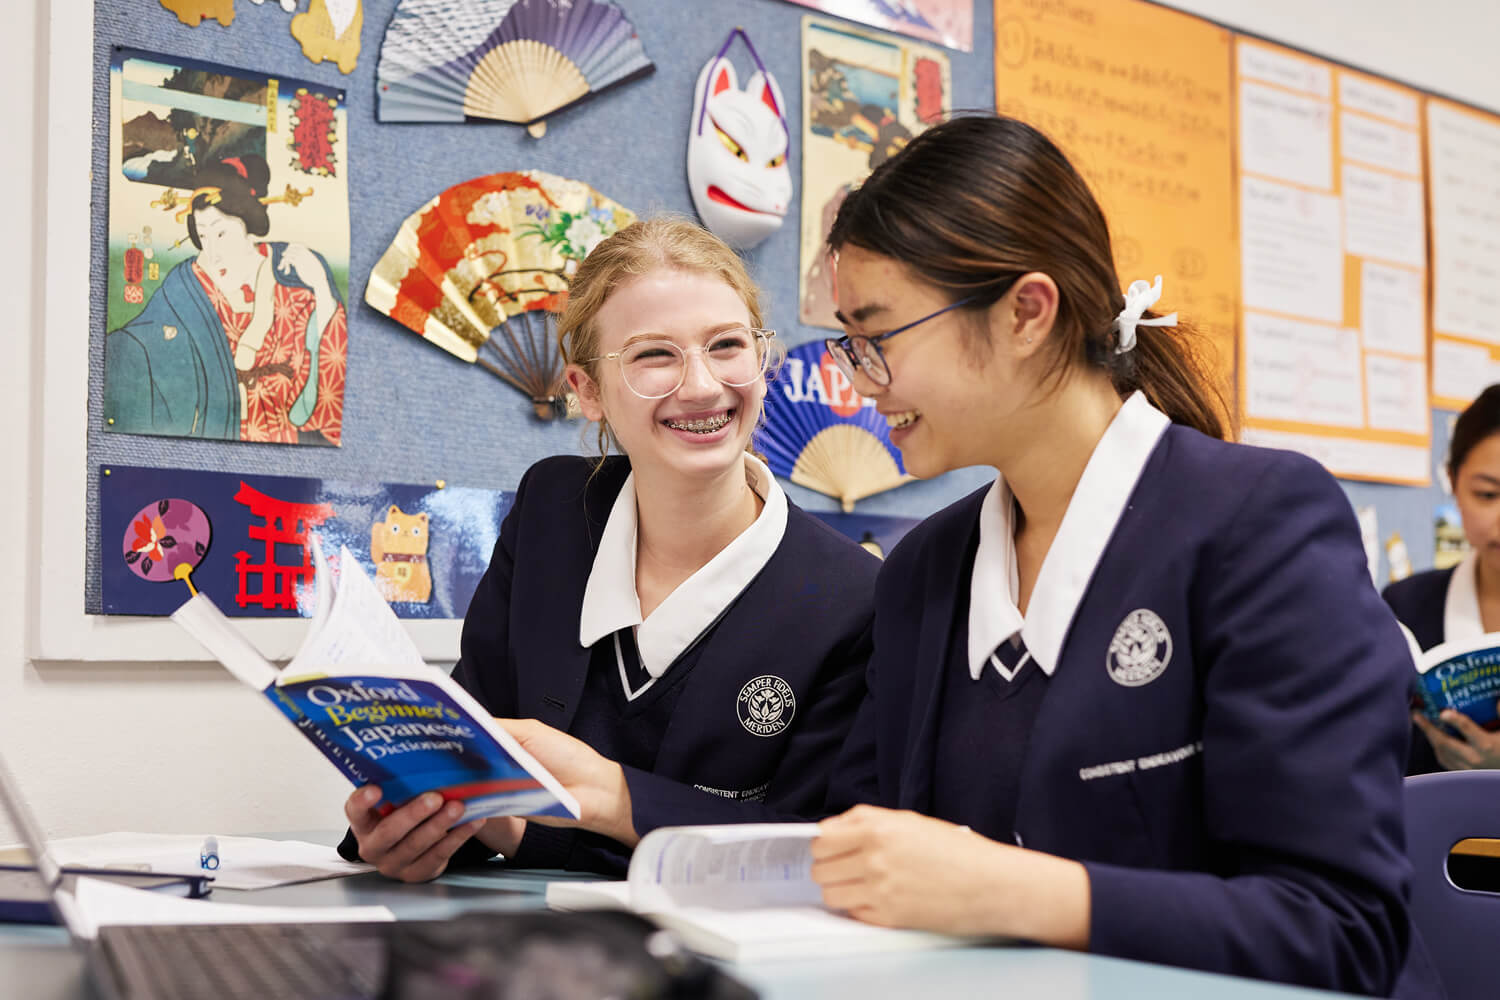 Meriden School - biểu tượng thành tựu giáo dục của Sydney, bang NSW